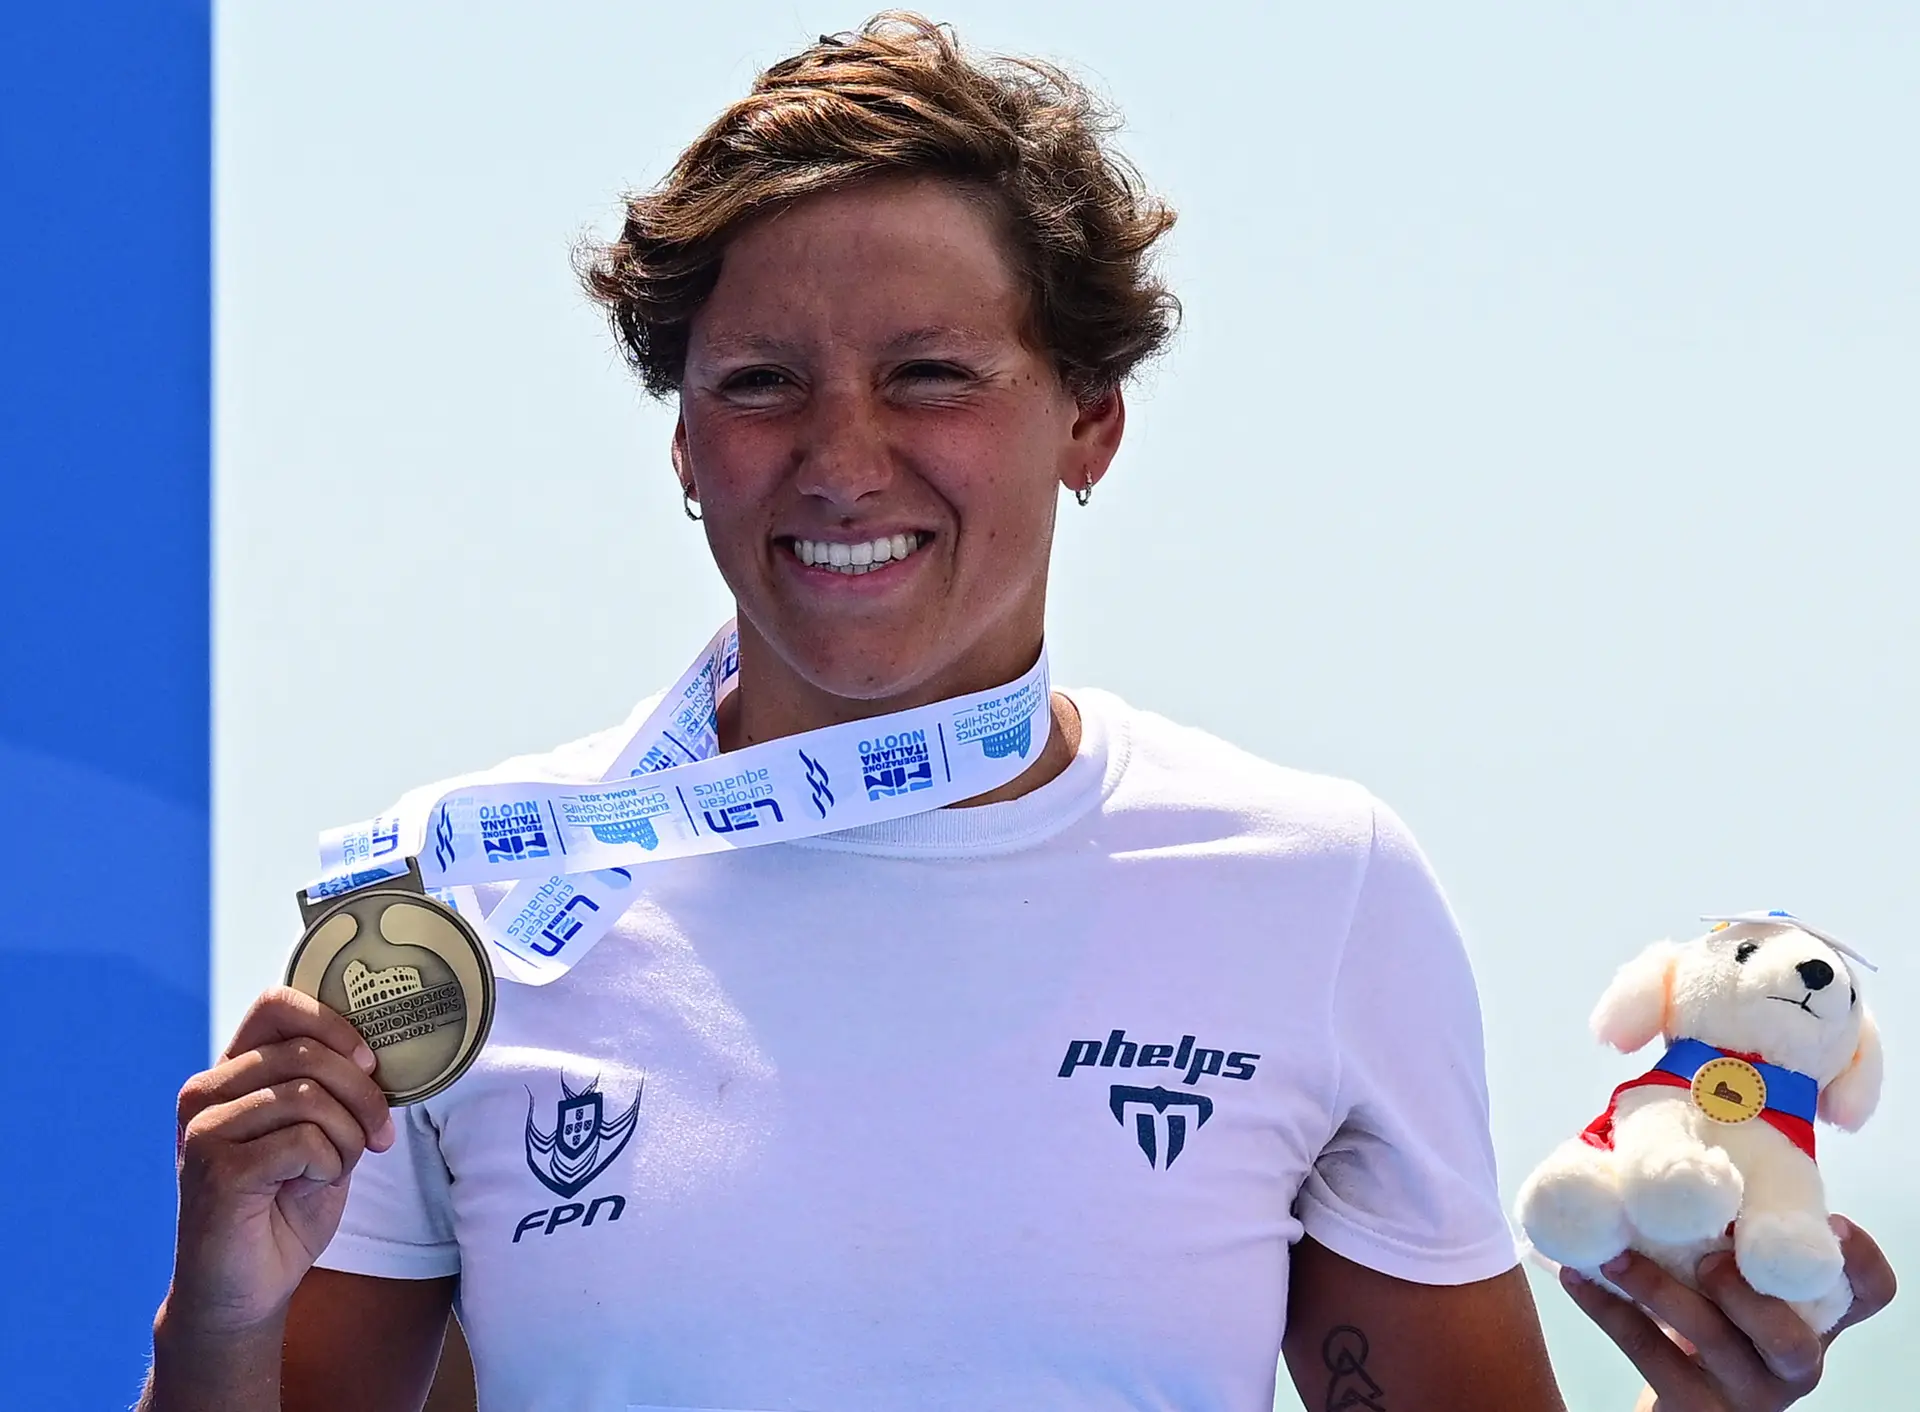 Nadadora Angélica André conquista bronze nos 10 km de águas abertas